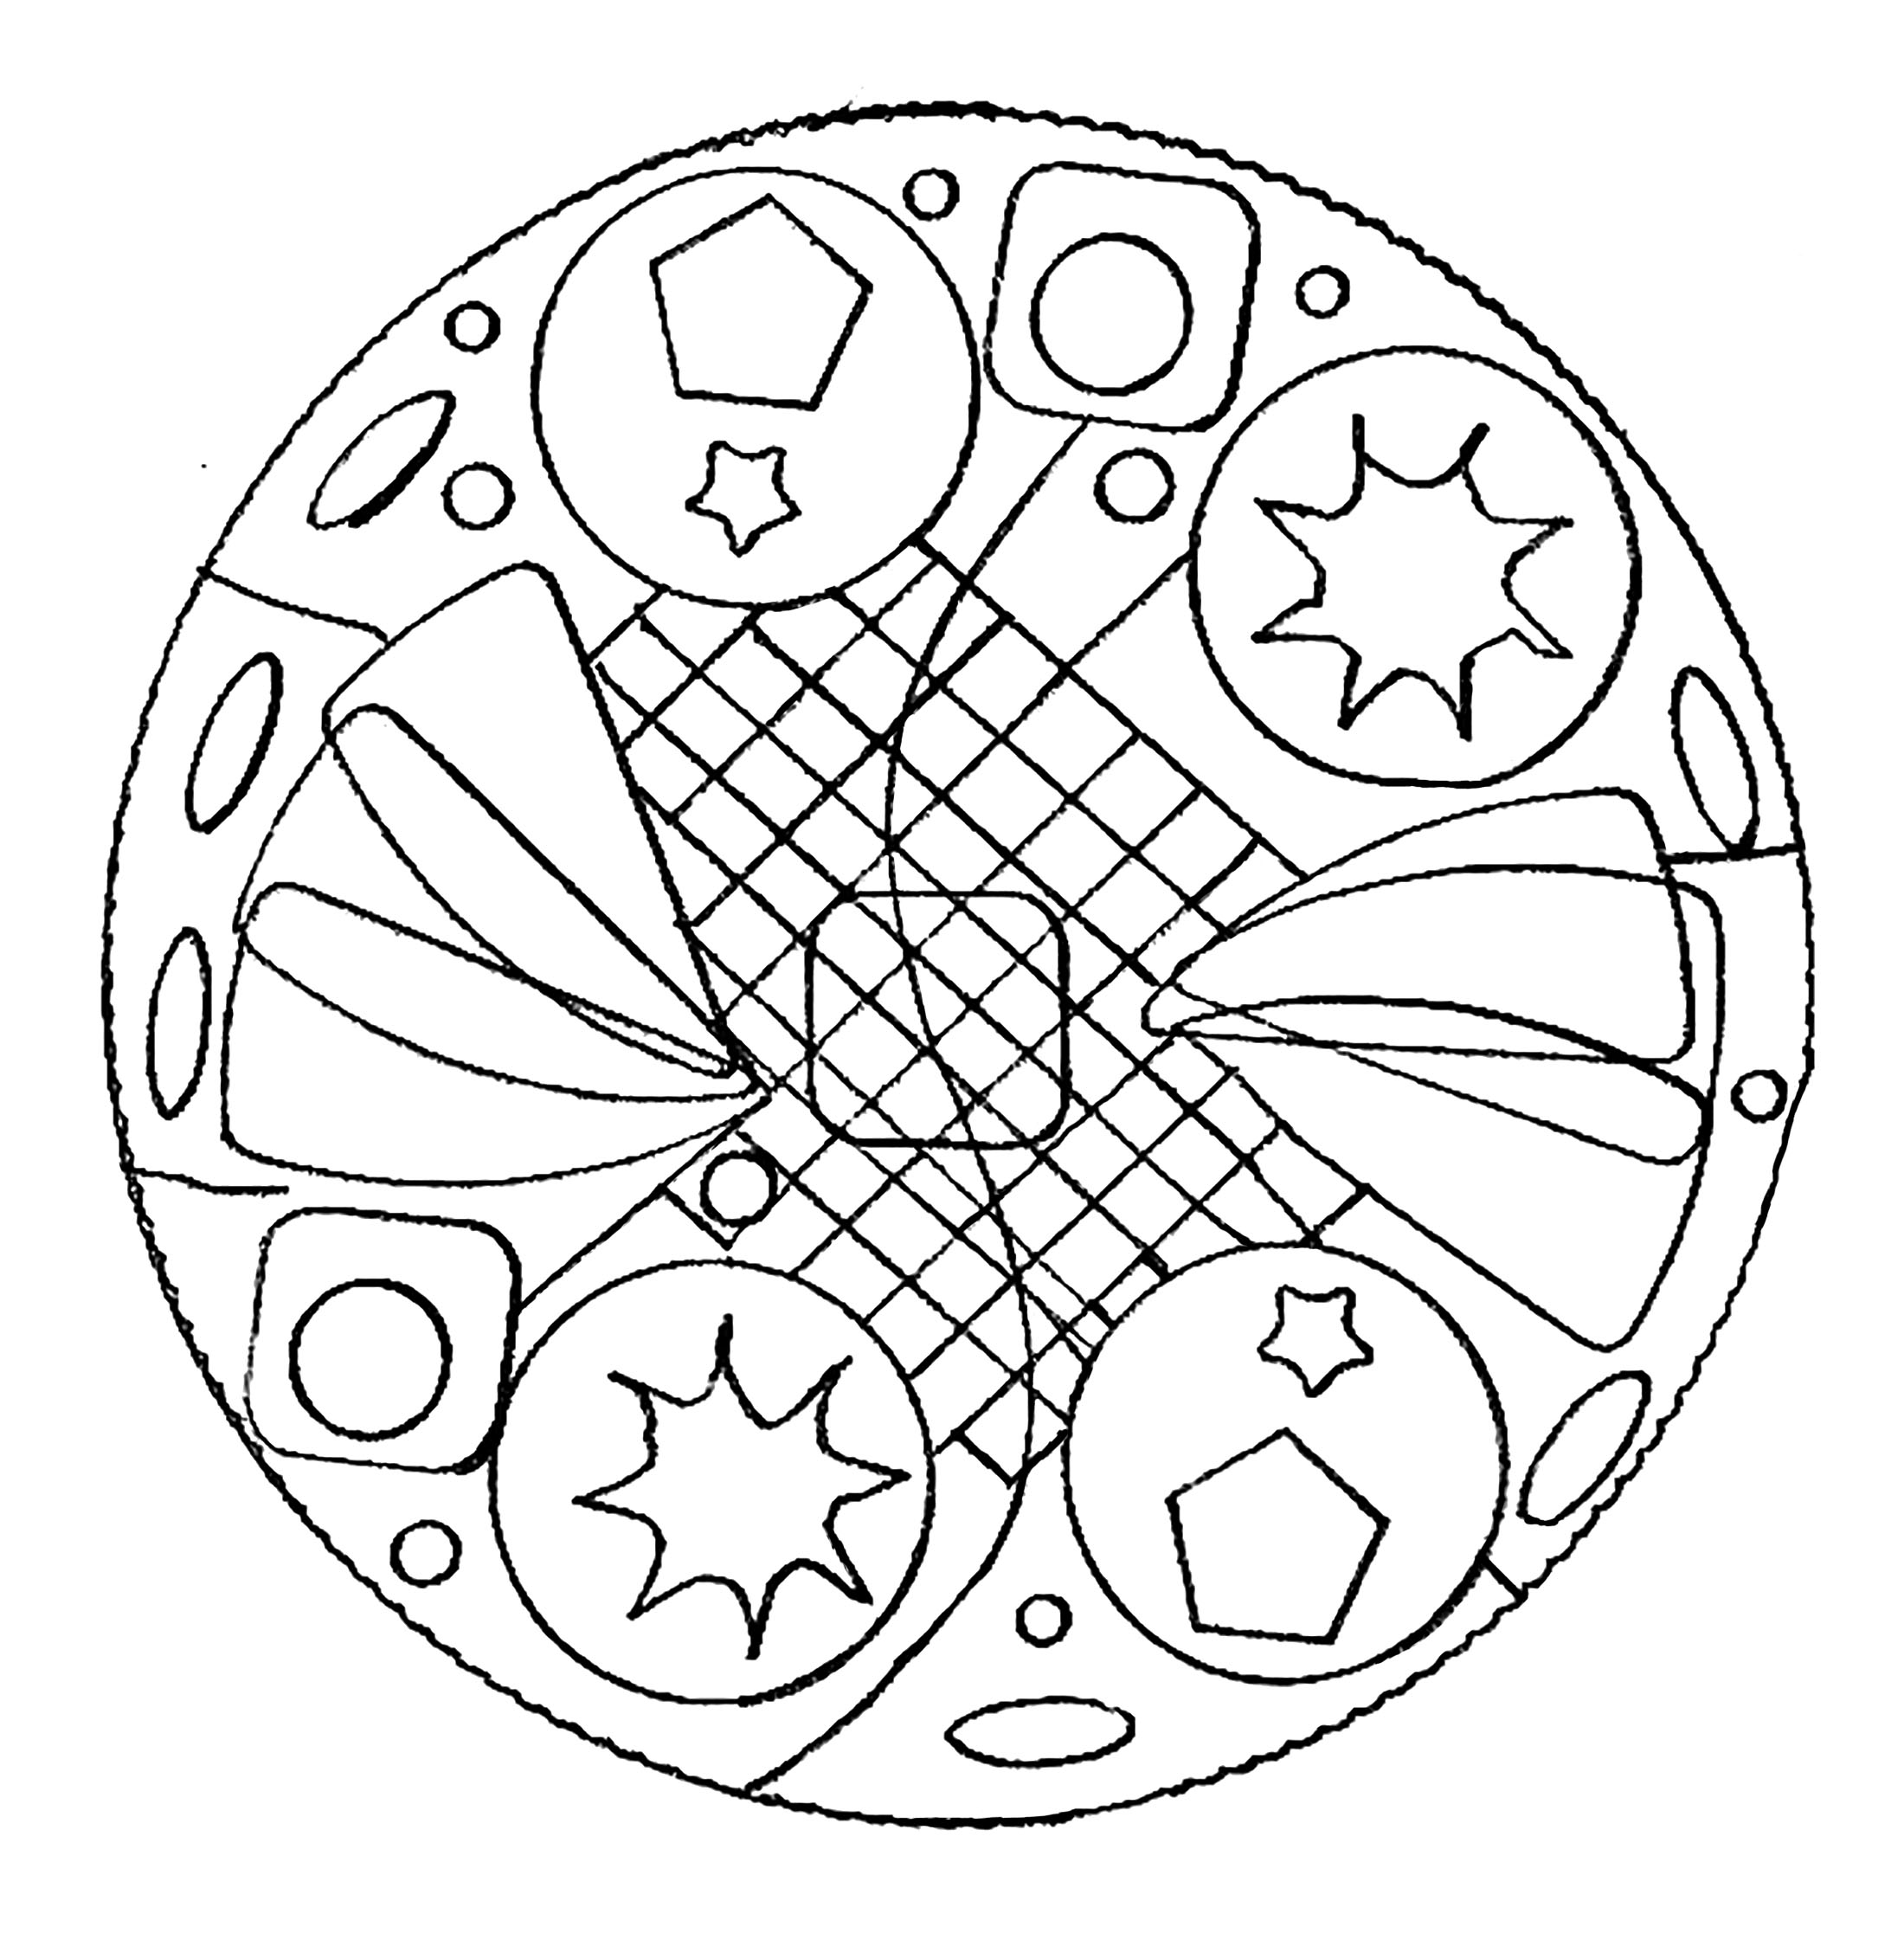 Uma Mandala perfeita para quem gosta de simplicidade ou não tem muito tempo para colorir.